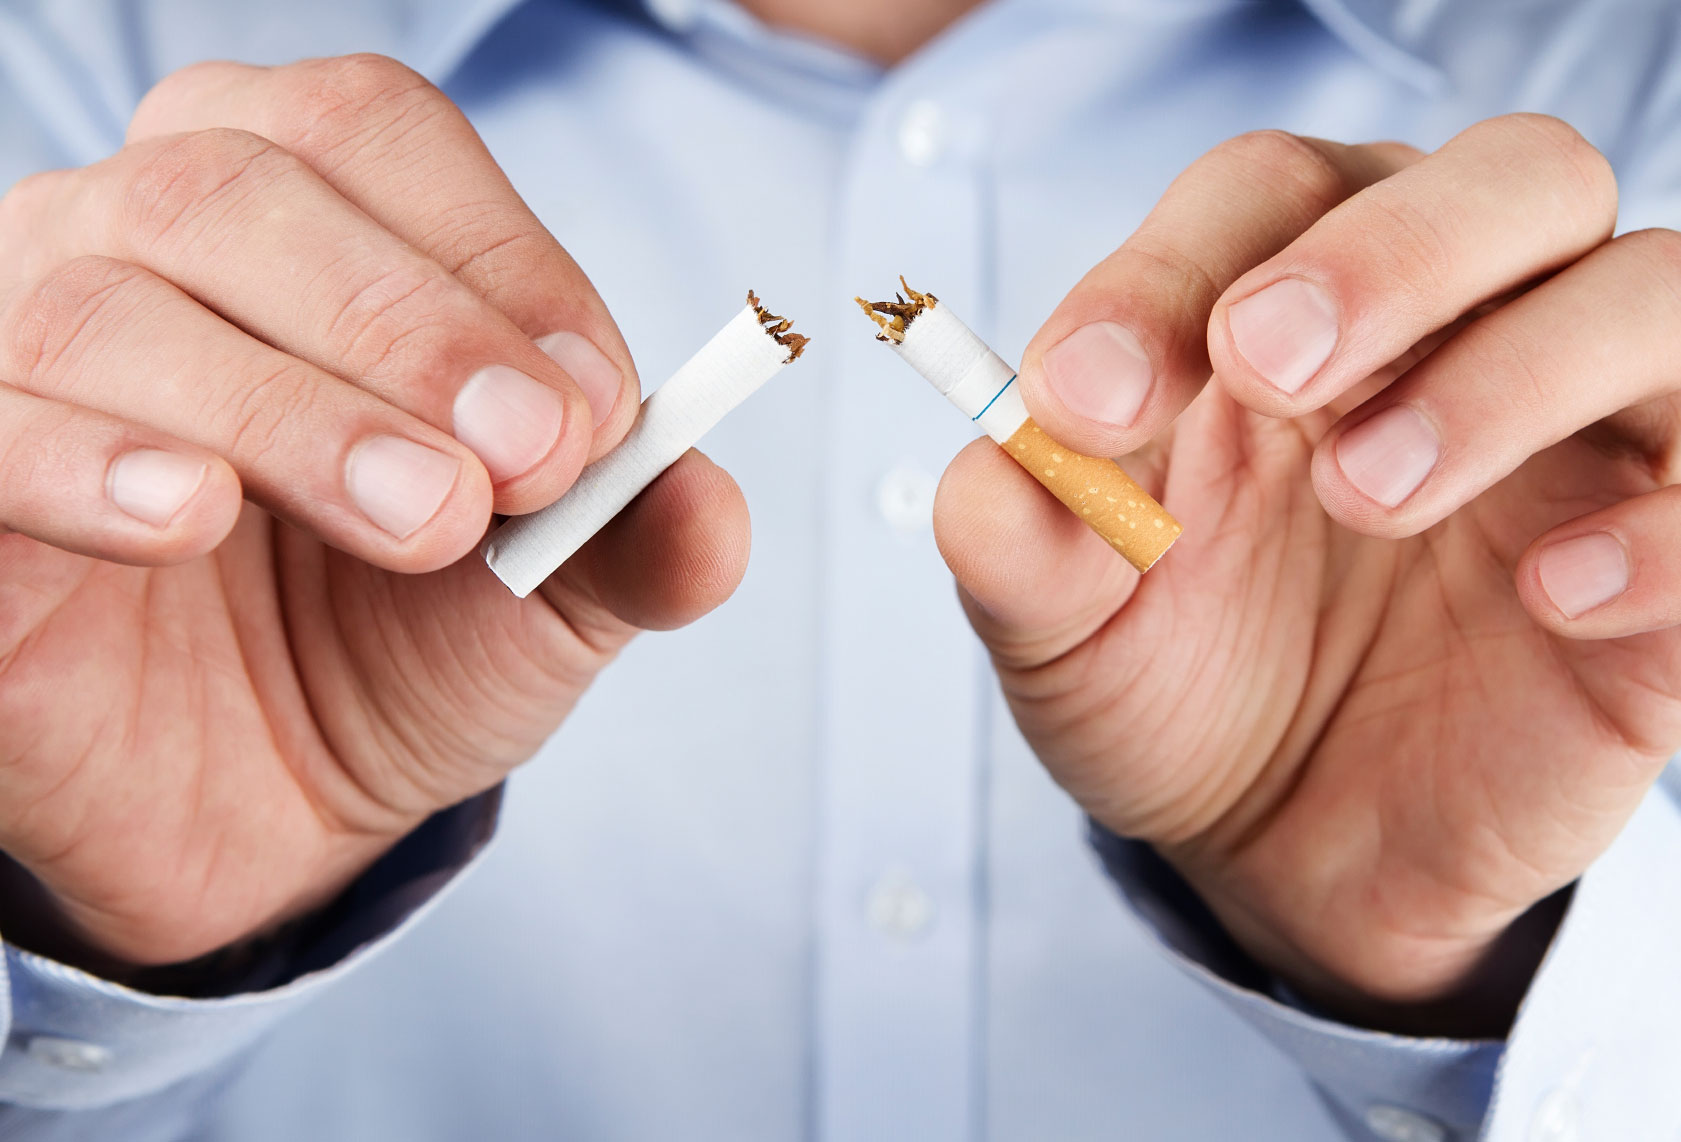 8 Benefits to Quit Smoking